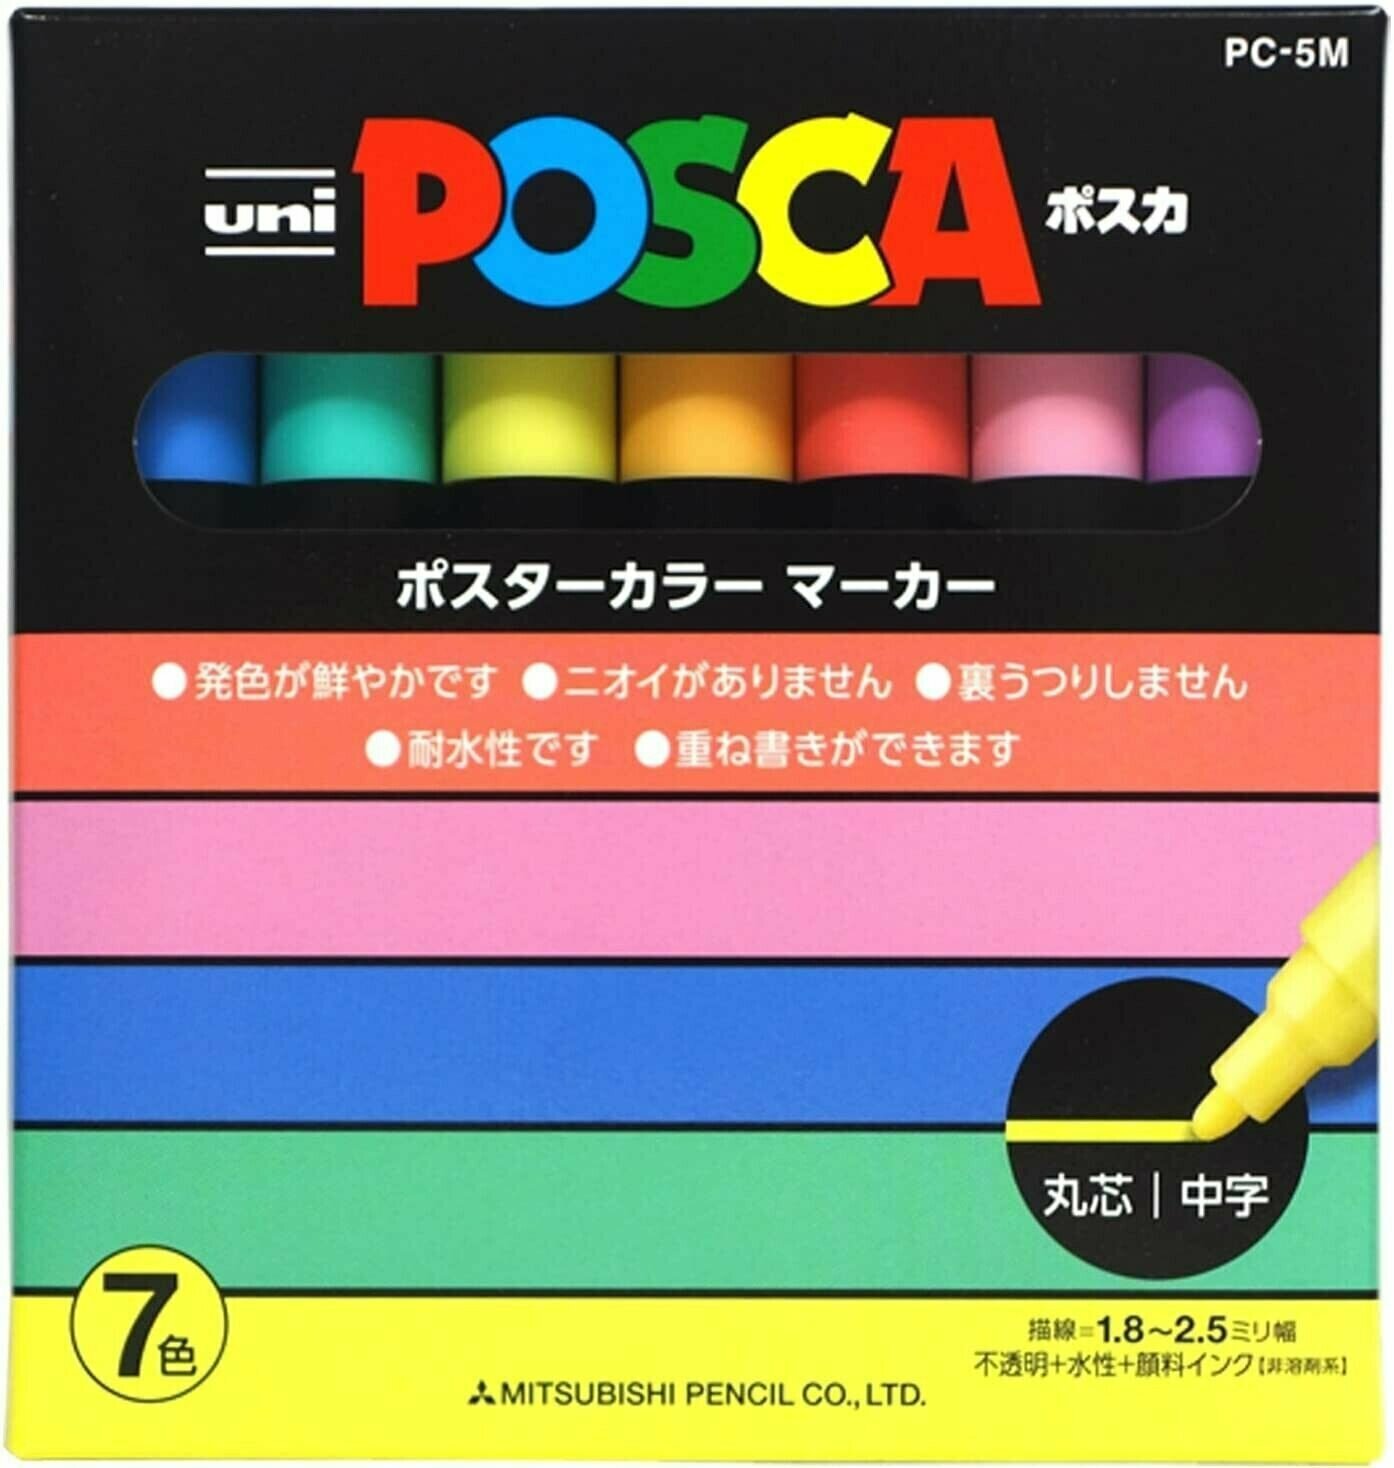 Маркеры UNI Posca PC-5M набор из 7 пастельных цветов толщина 1,8 -2,5мм